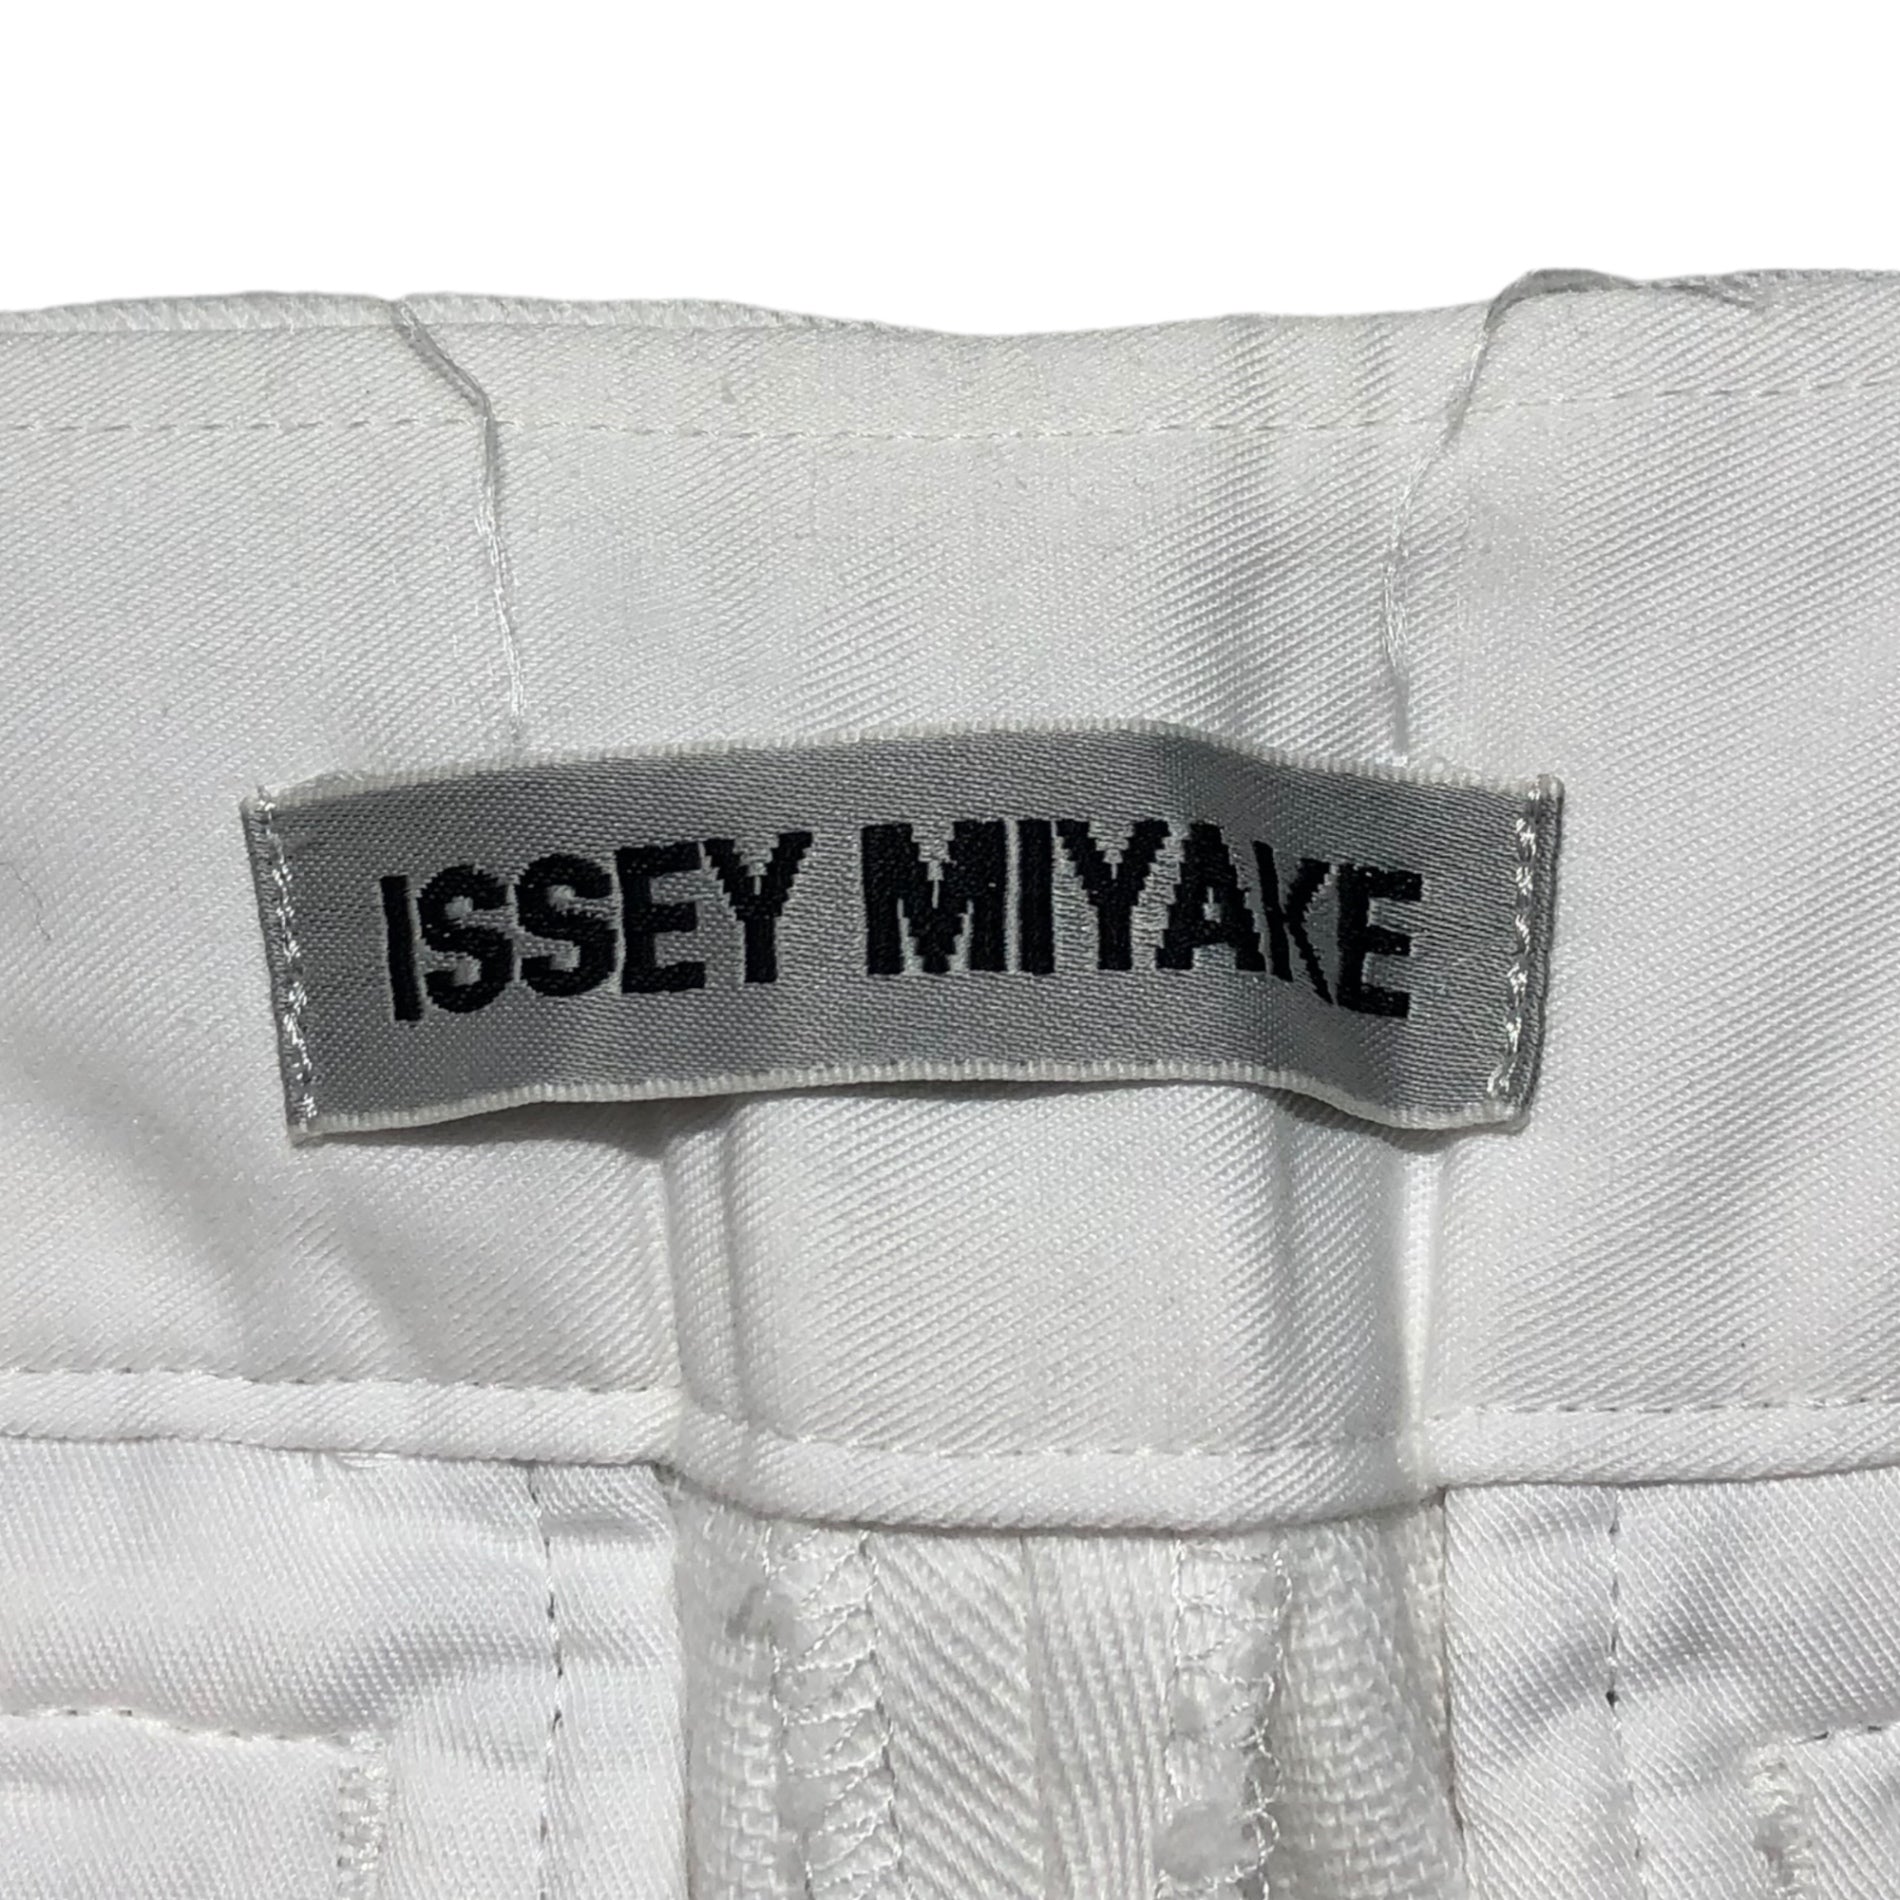 ISSEY MIYAKE(イッセイミヤケ) 93's polish message flare cropped pants/ポーランド語メッセージフレアクロップドパンツ IM31FF049 SIZE 2(M) ホワイト×ブラック